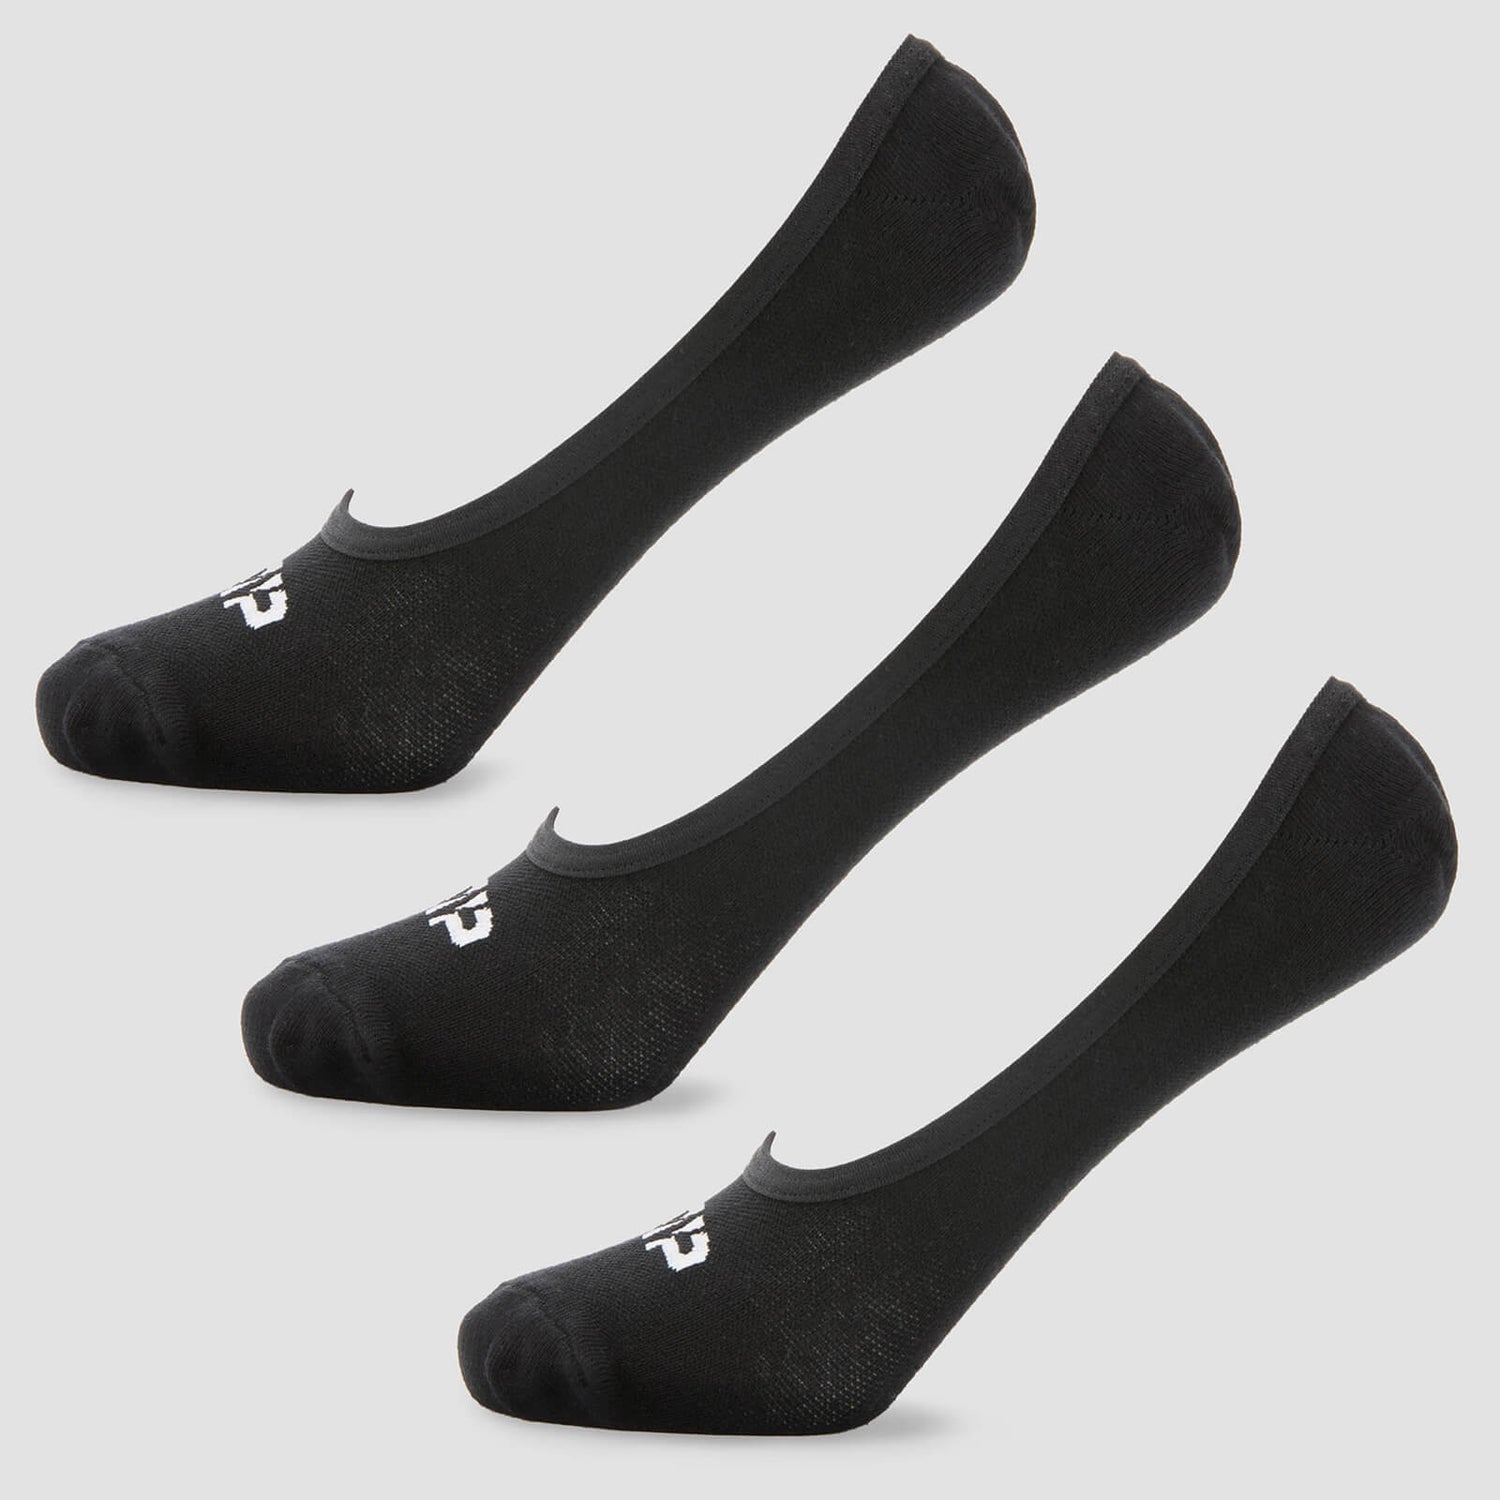 MP muške nevidljive čarape Essentials - crne (3 kom.) - UK 6-8